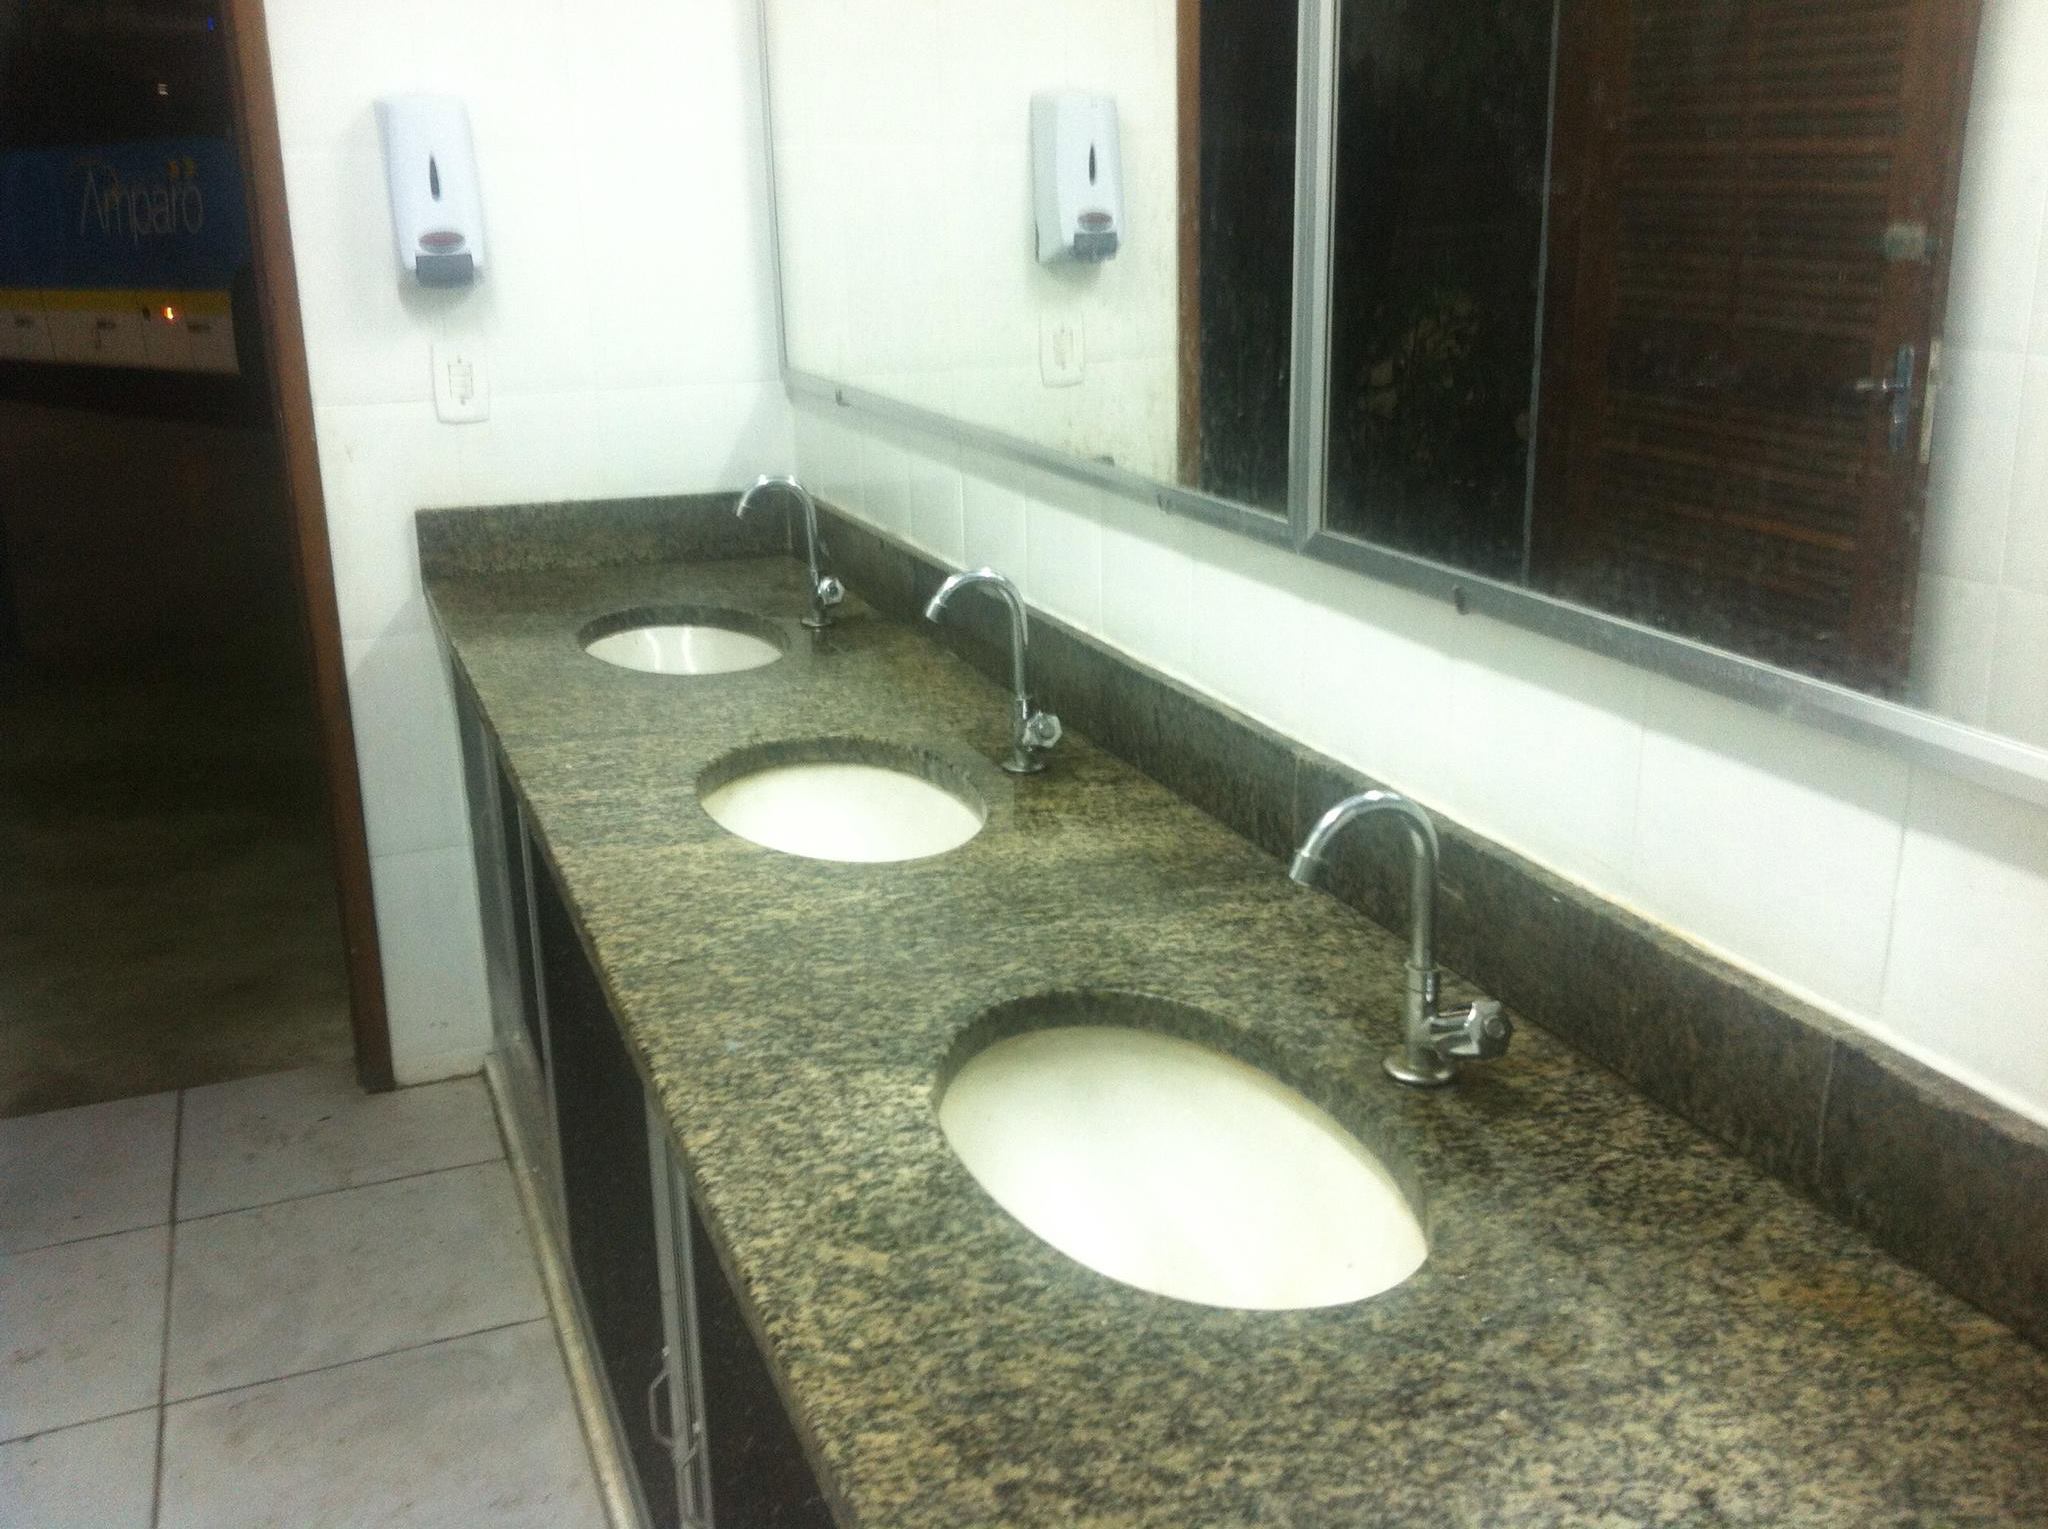 Maricá: Após reclamações, prefeitura reforma banheiros do terminal rodoviário